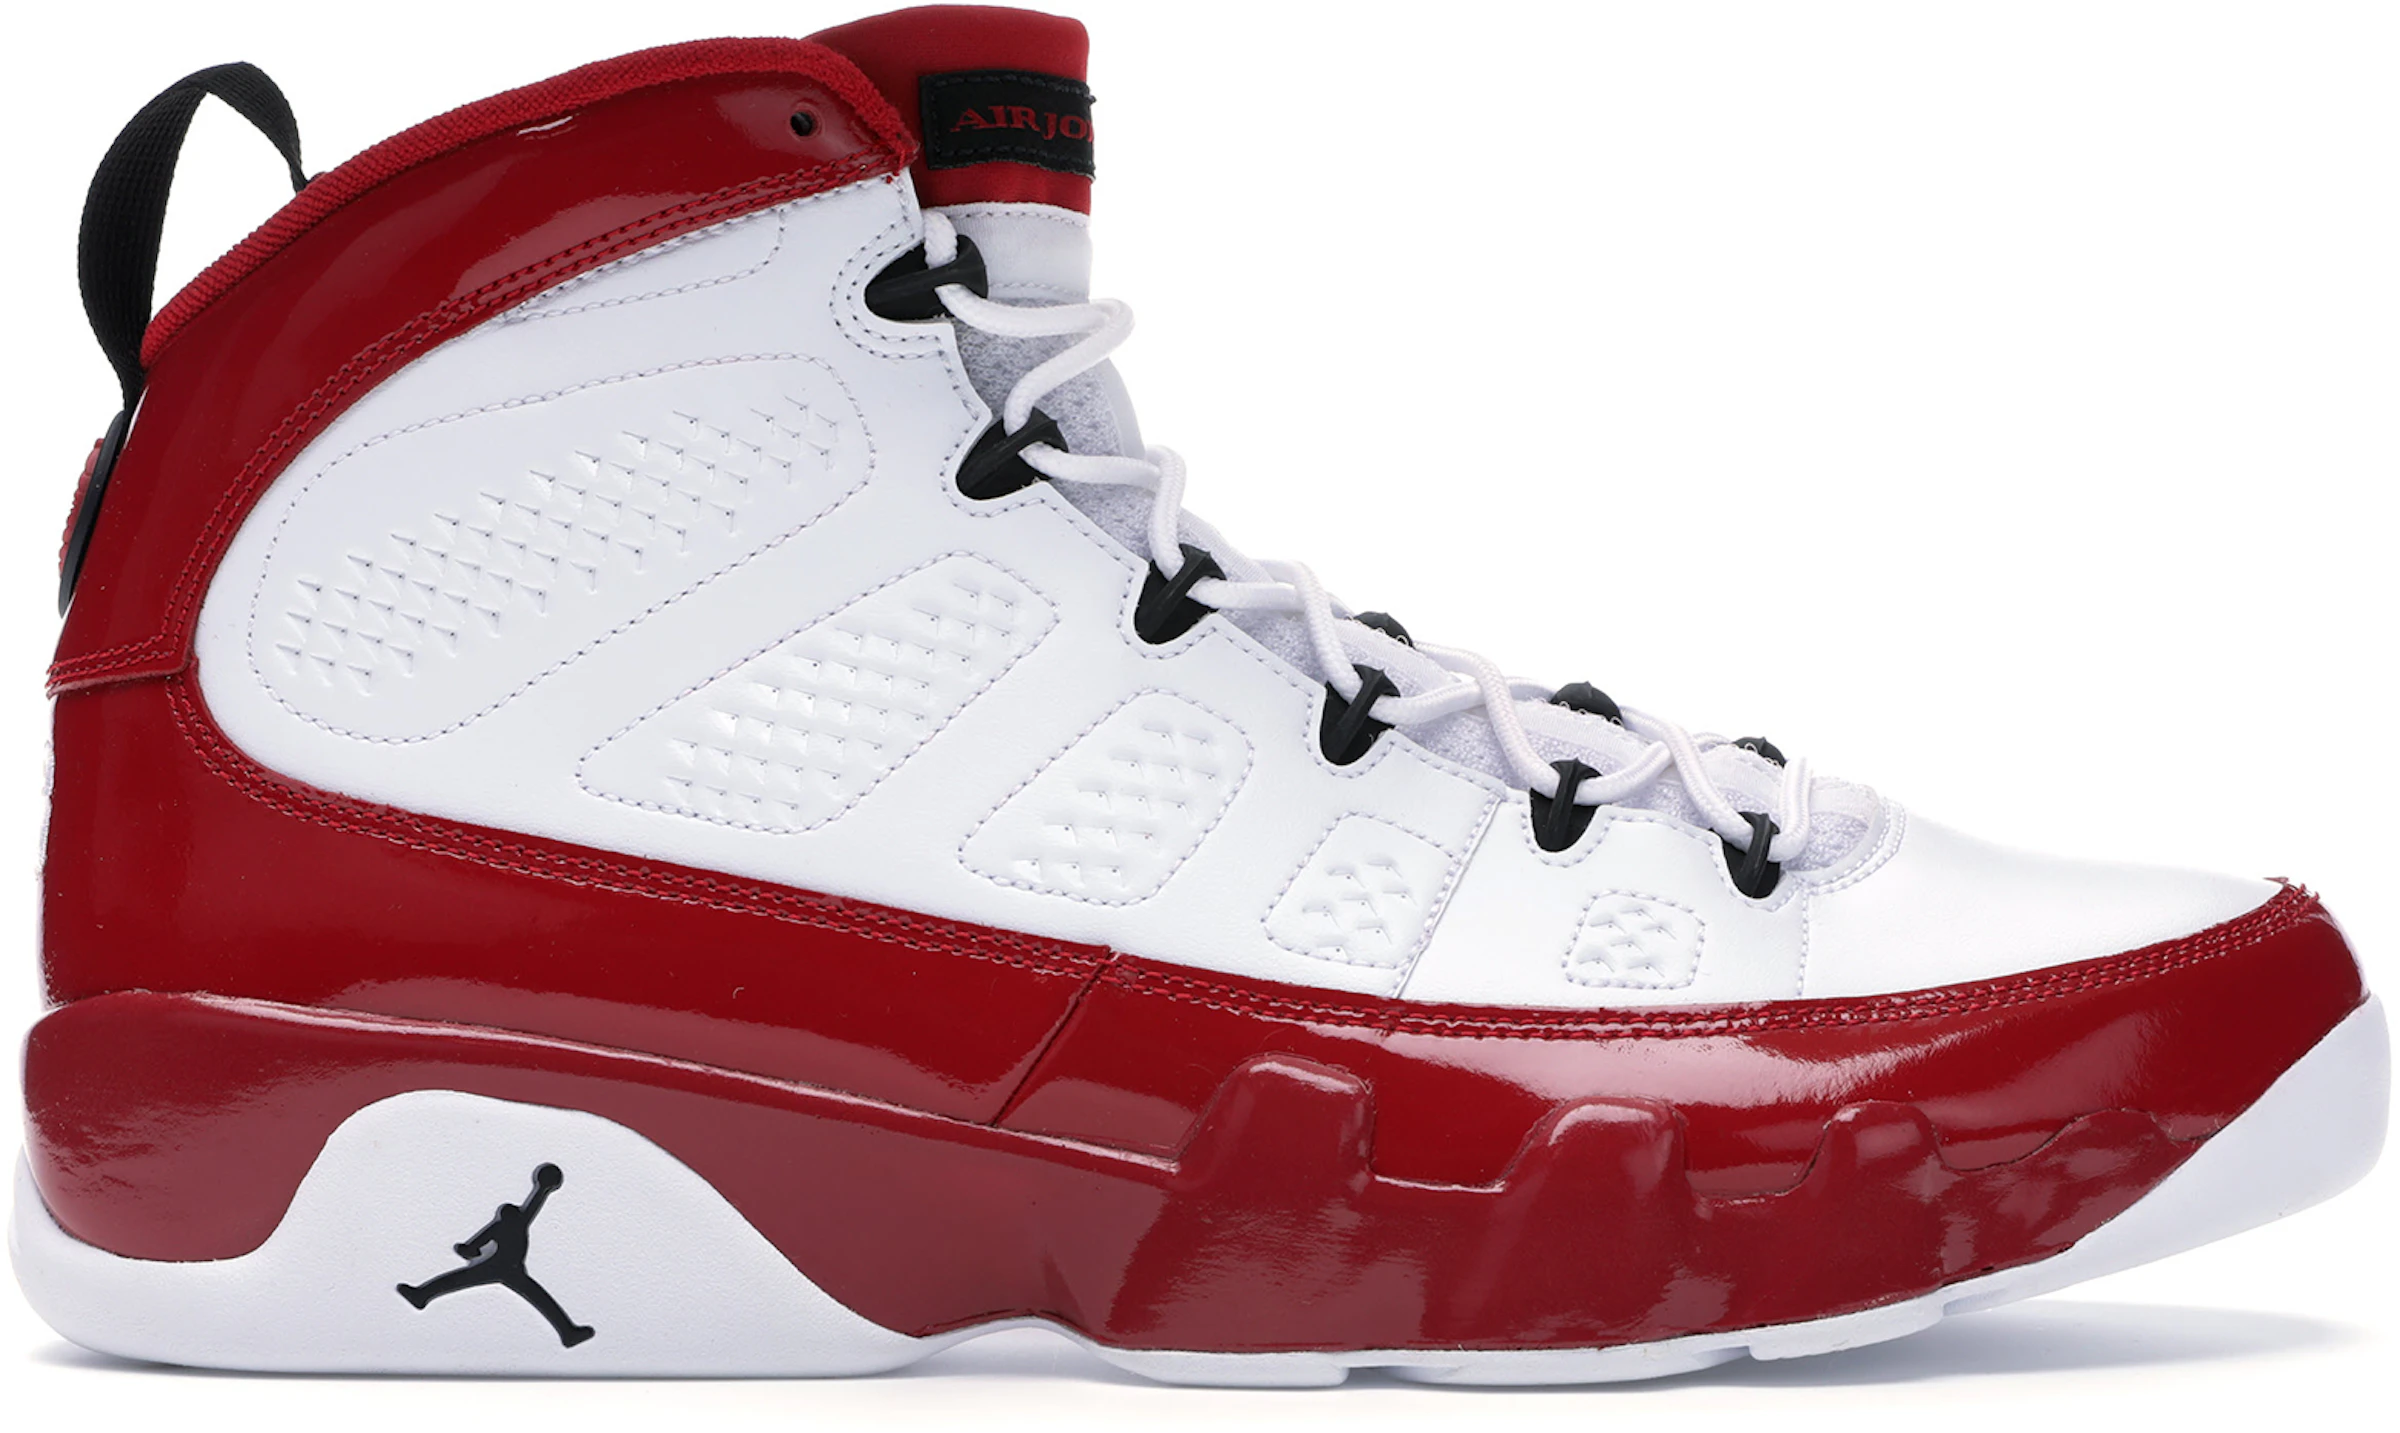 Compra Jordan 9 Calzado y sneakers nuevos - StockX